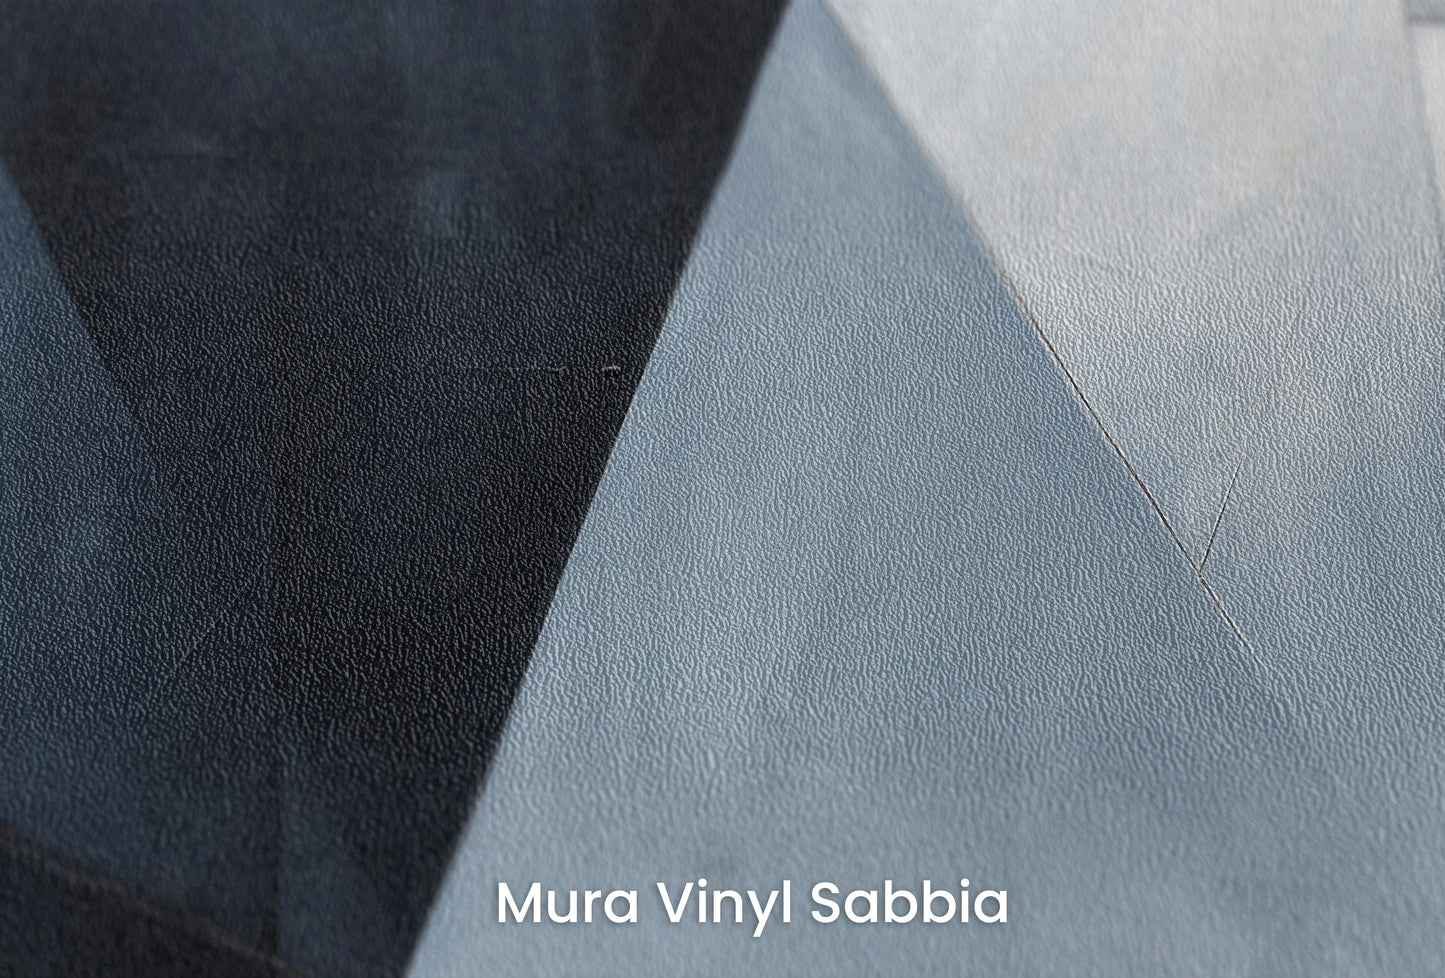 Zbliżenie na artystyczną fototapetę o nazwie Angular Elegance na podłożu Mura Vinyl Sabbia struktura grubego ziarna piasku.